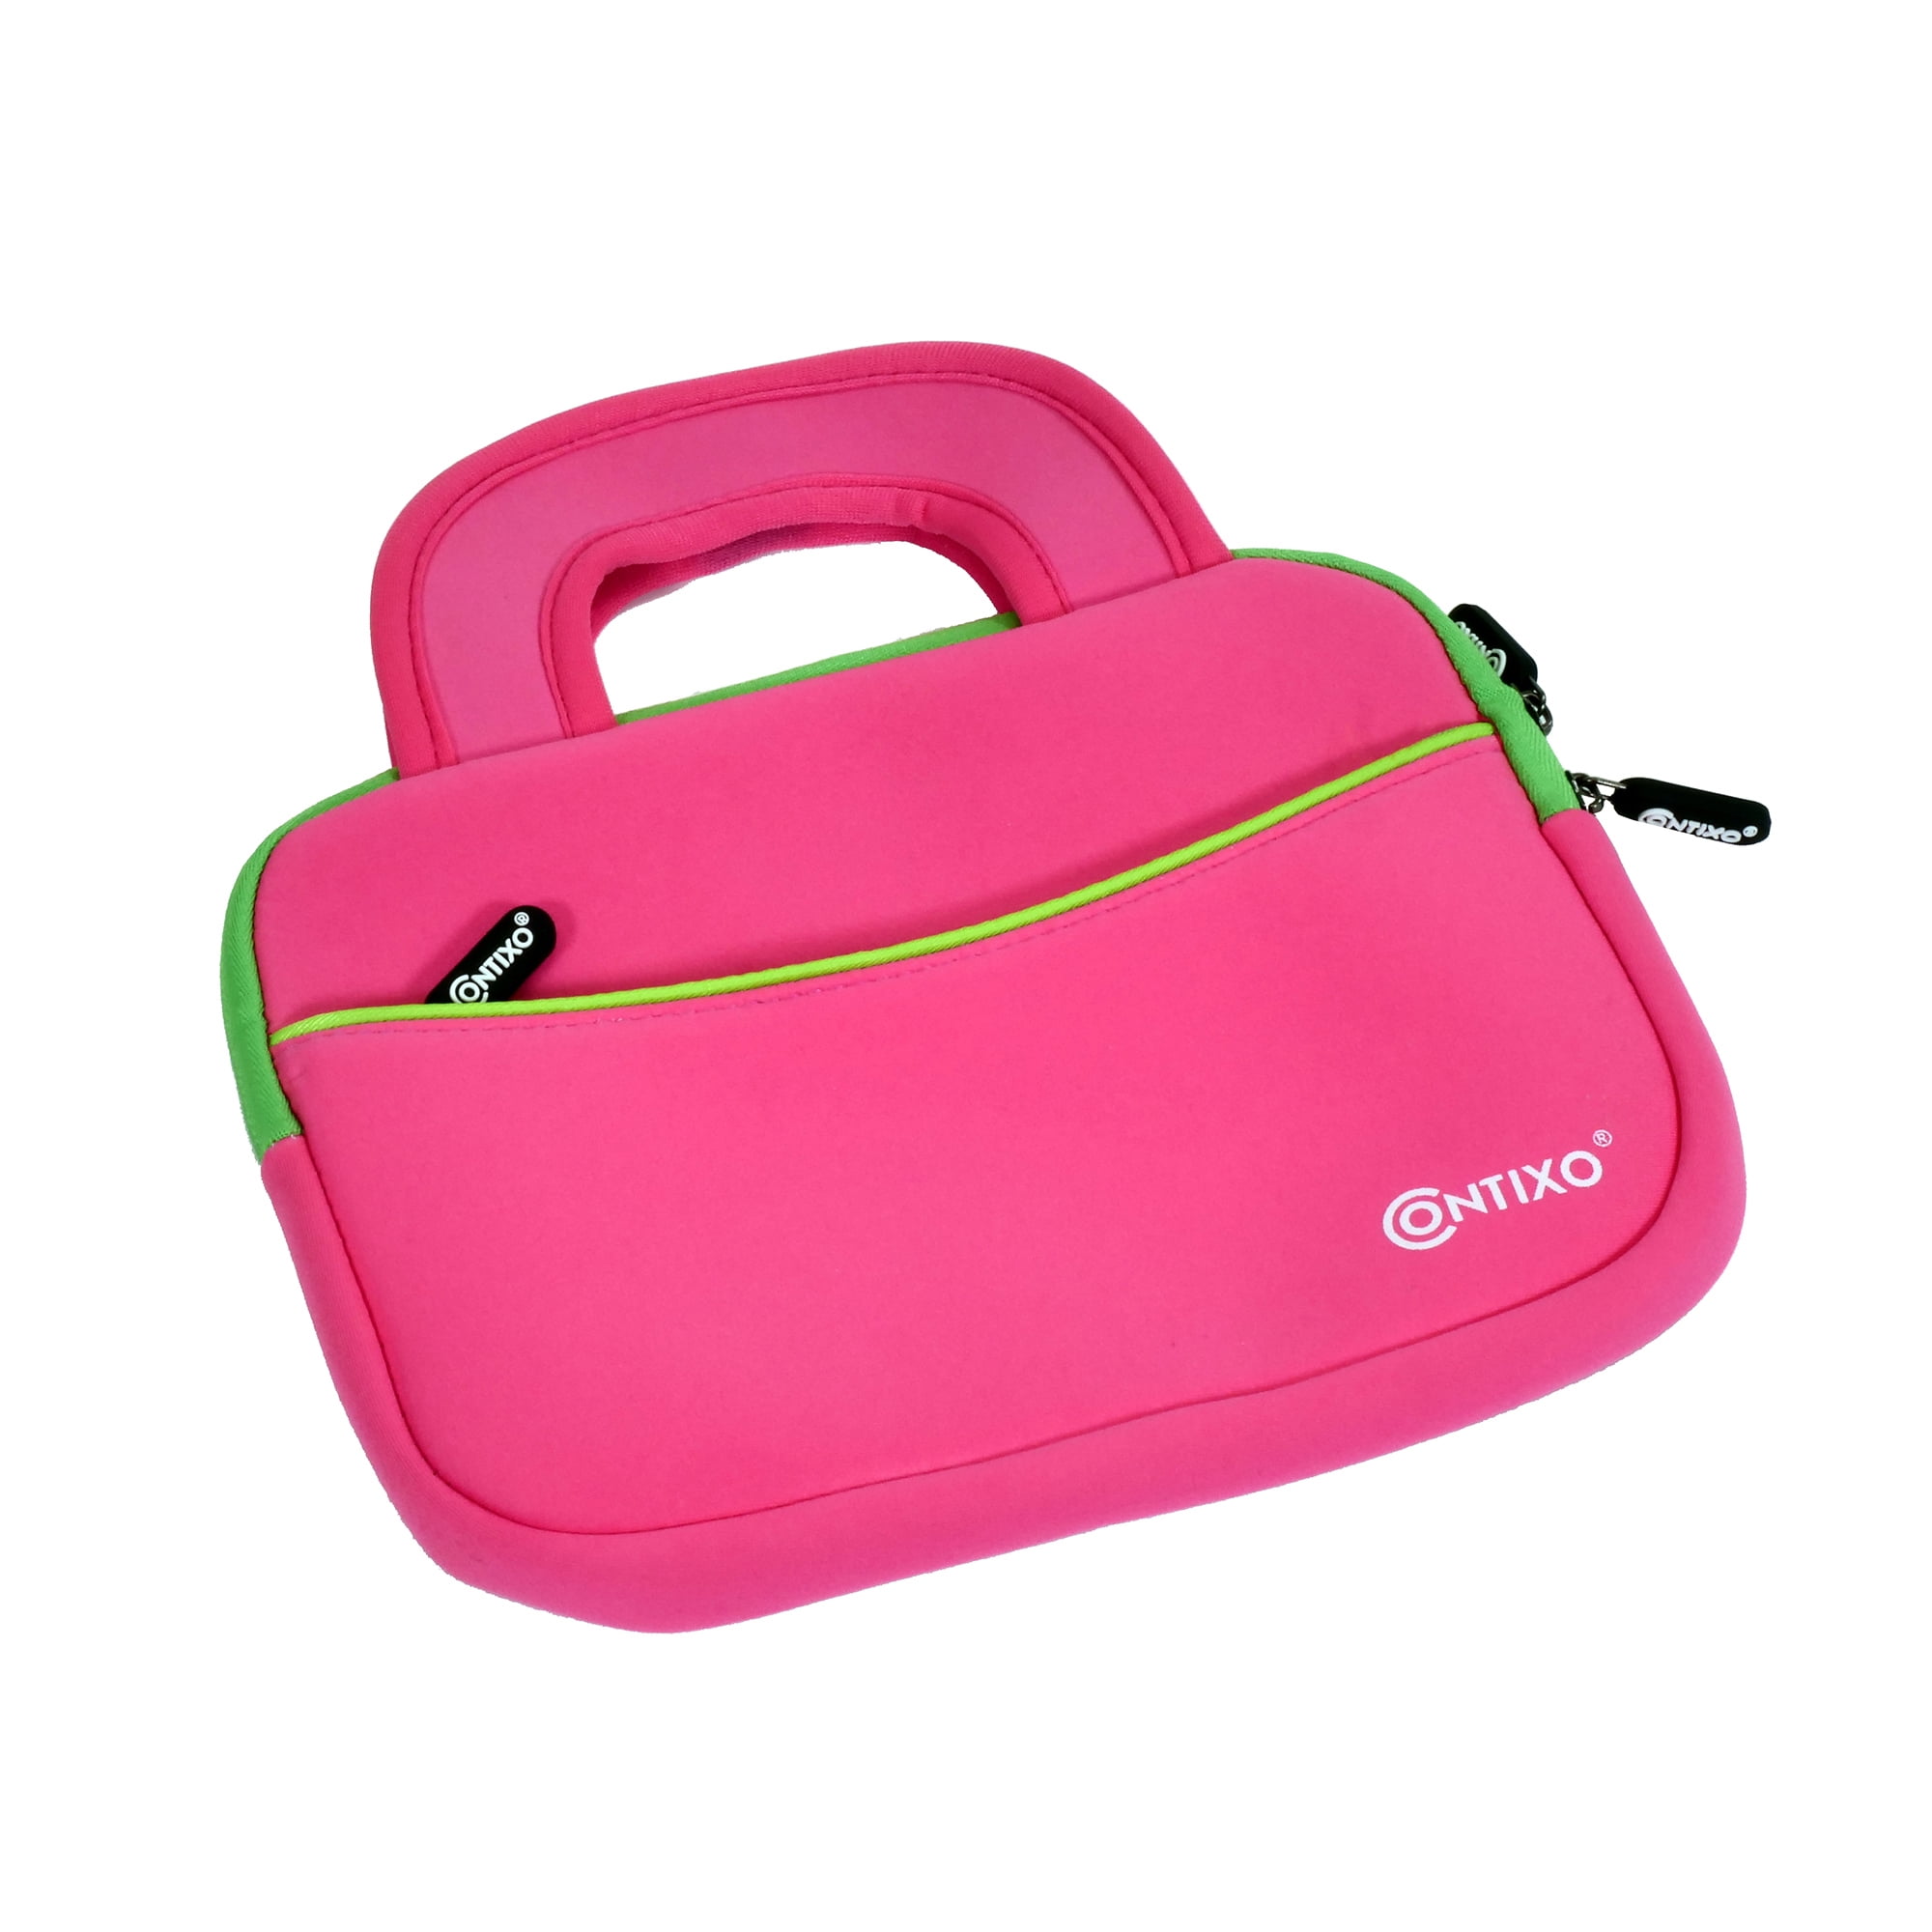 Kids Boys Girls Messenger Style Storage Travel Bag Case for Leapfrog LeapPad 3 